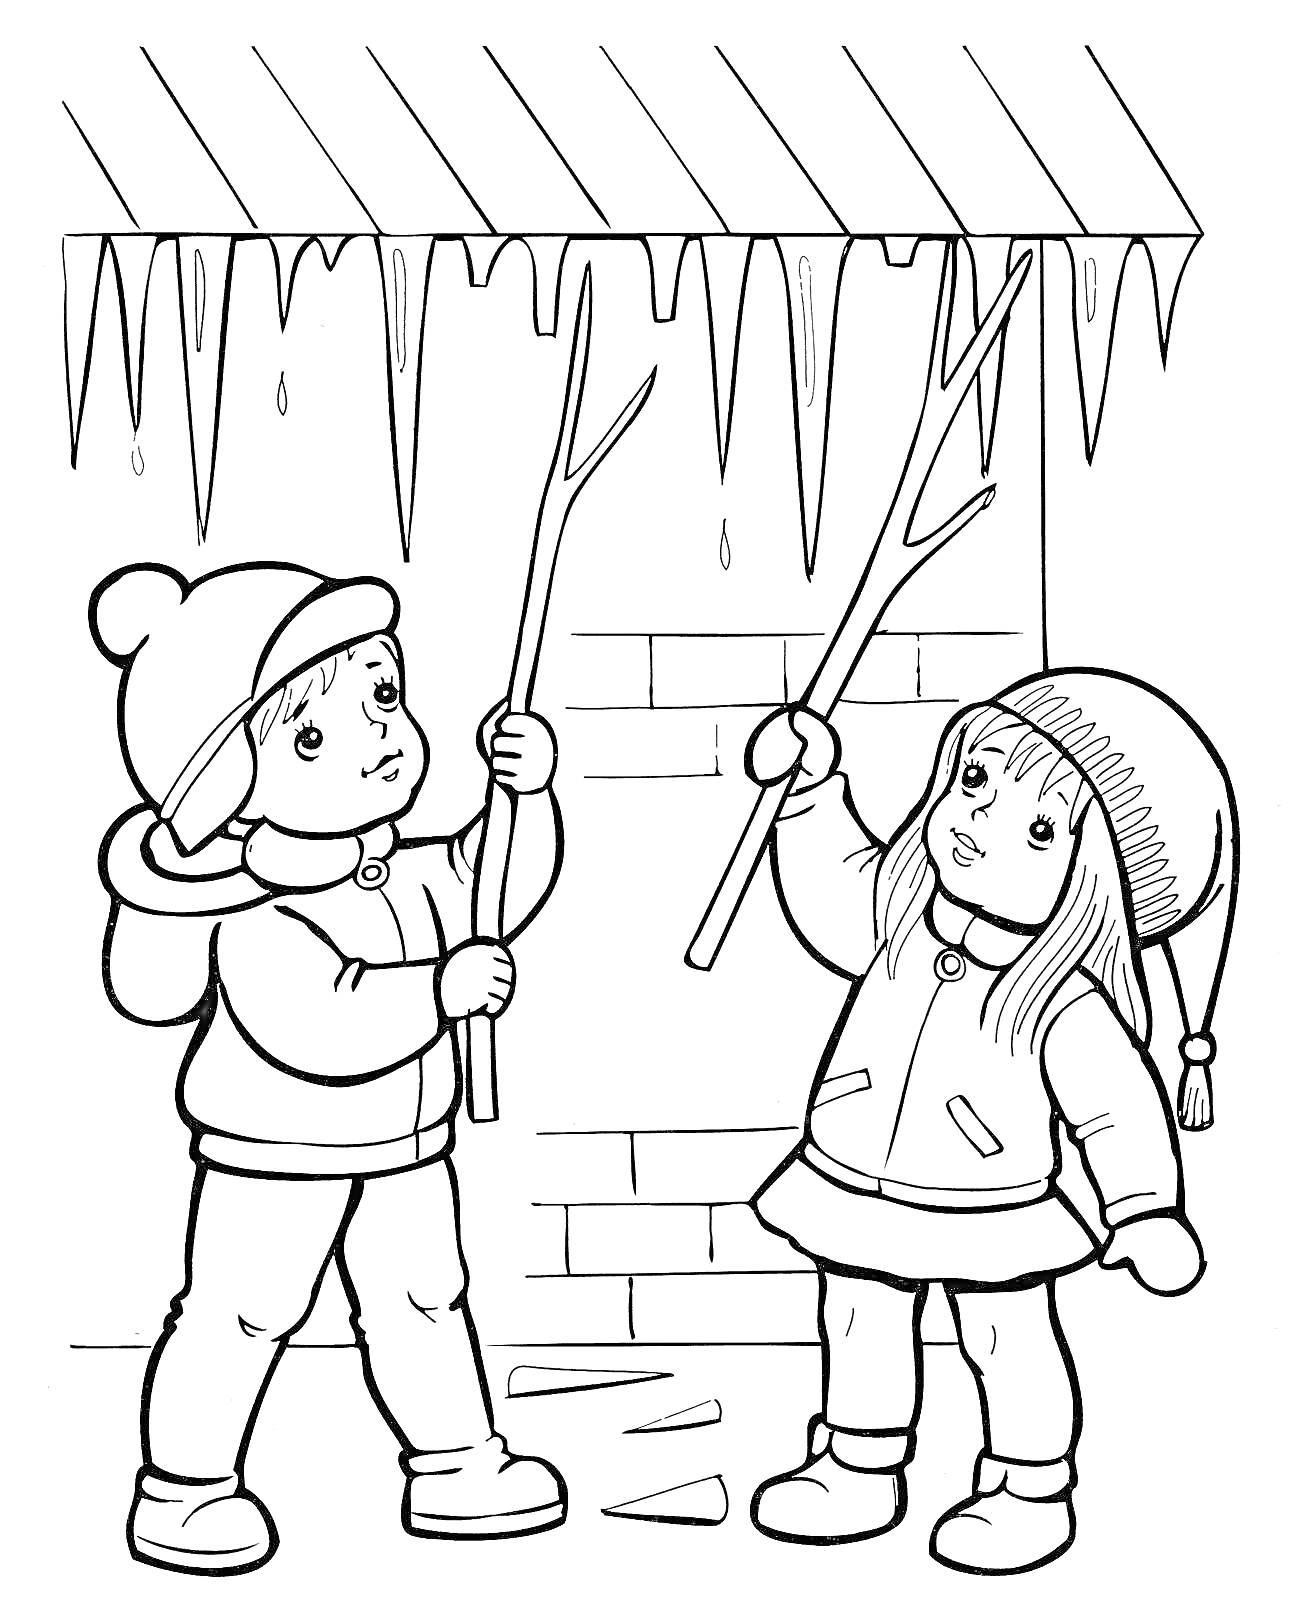 Дети под сосульками возле дома, одетые в зимнюю одежду, с палочками в руках, сбивают сосульки с крыши